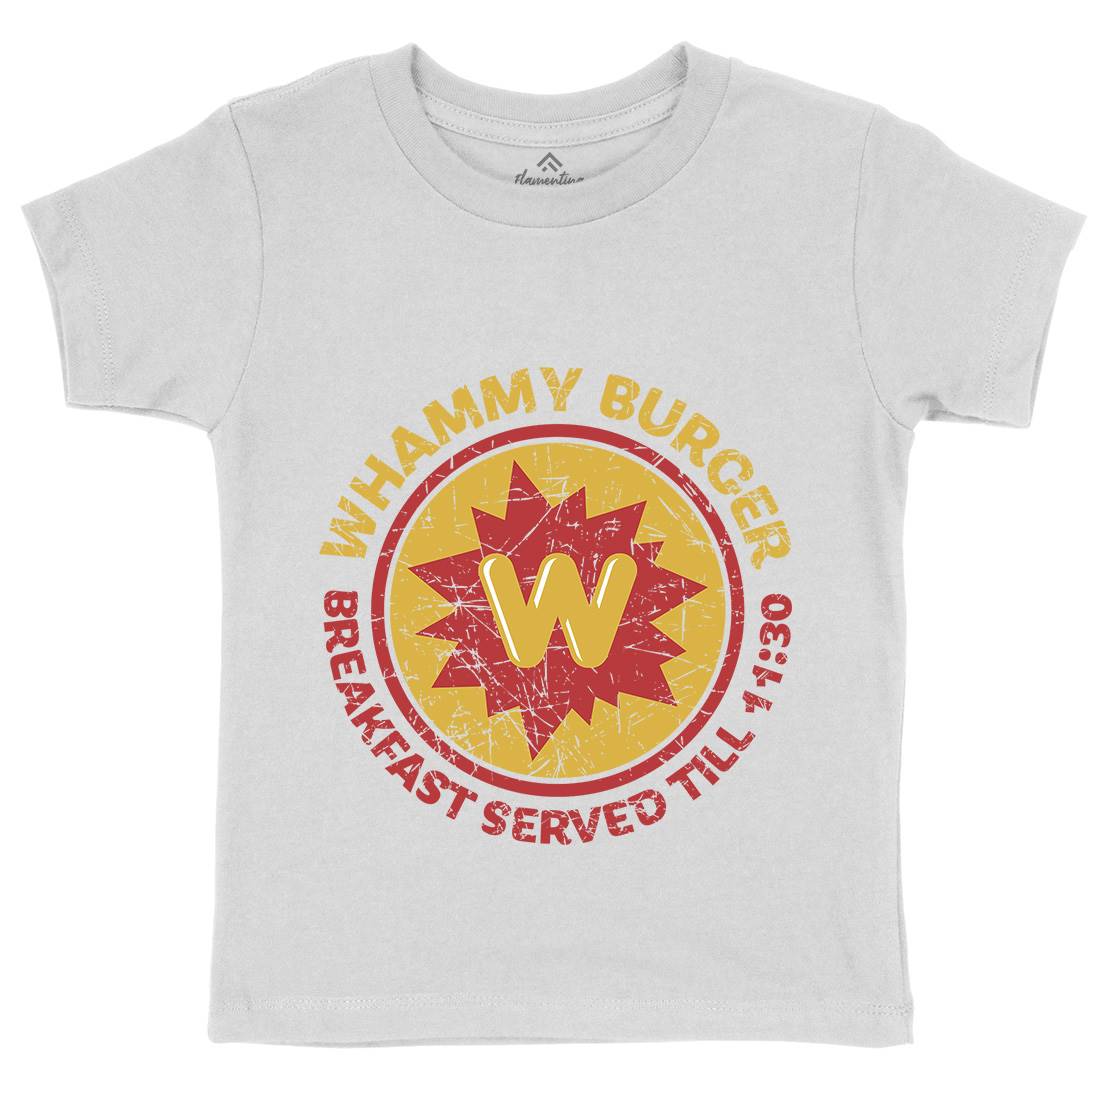 Whammy Burger Kids Crew Neck T-Shirt Food D286